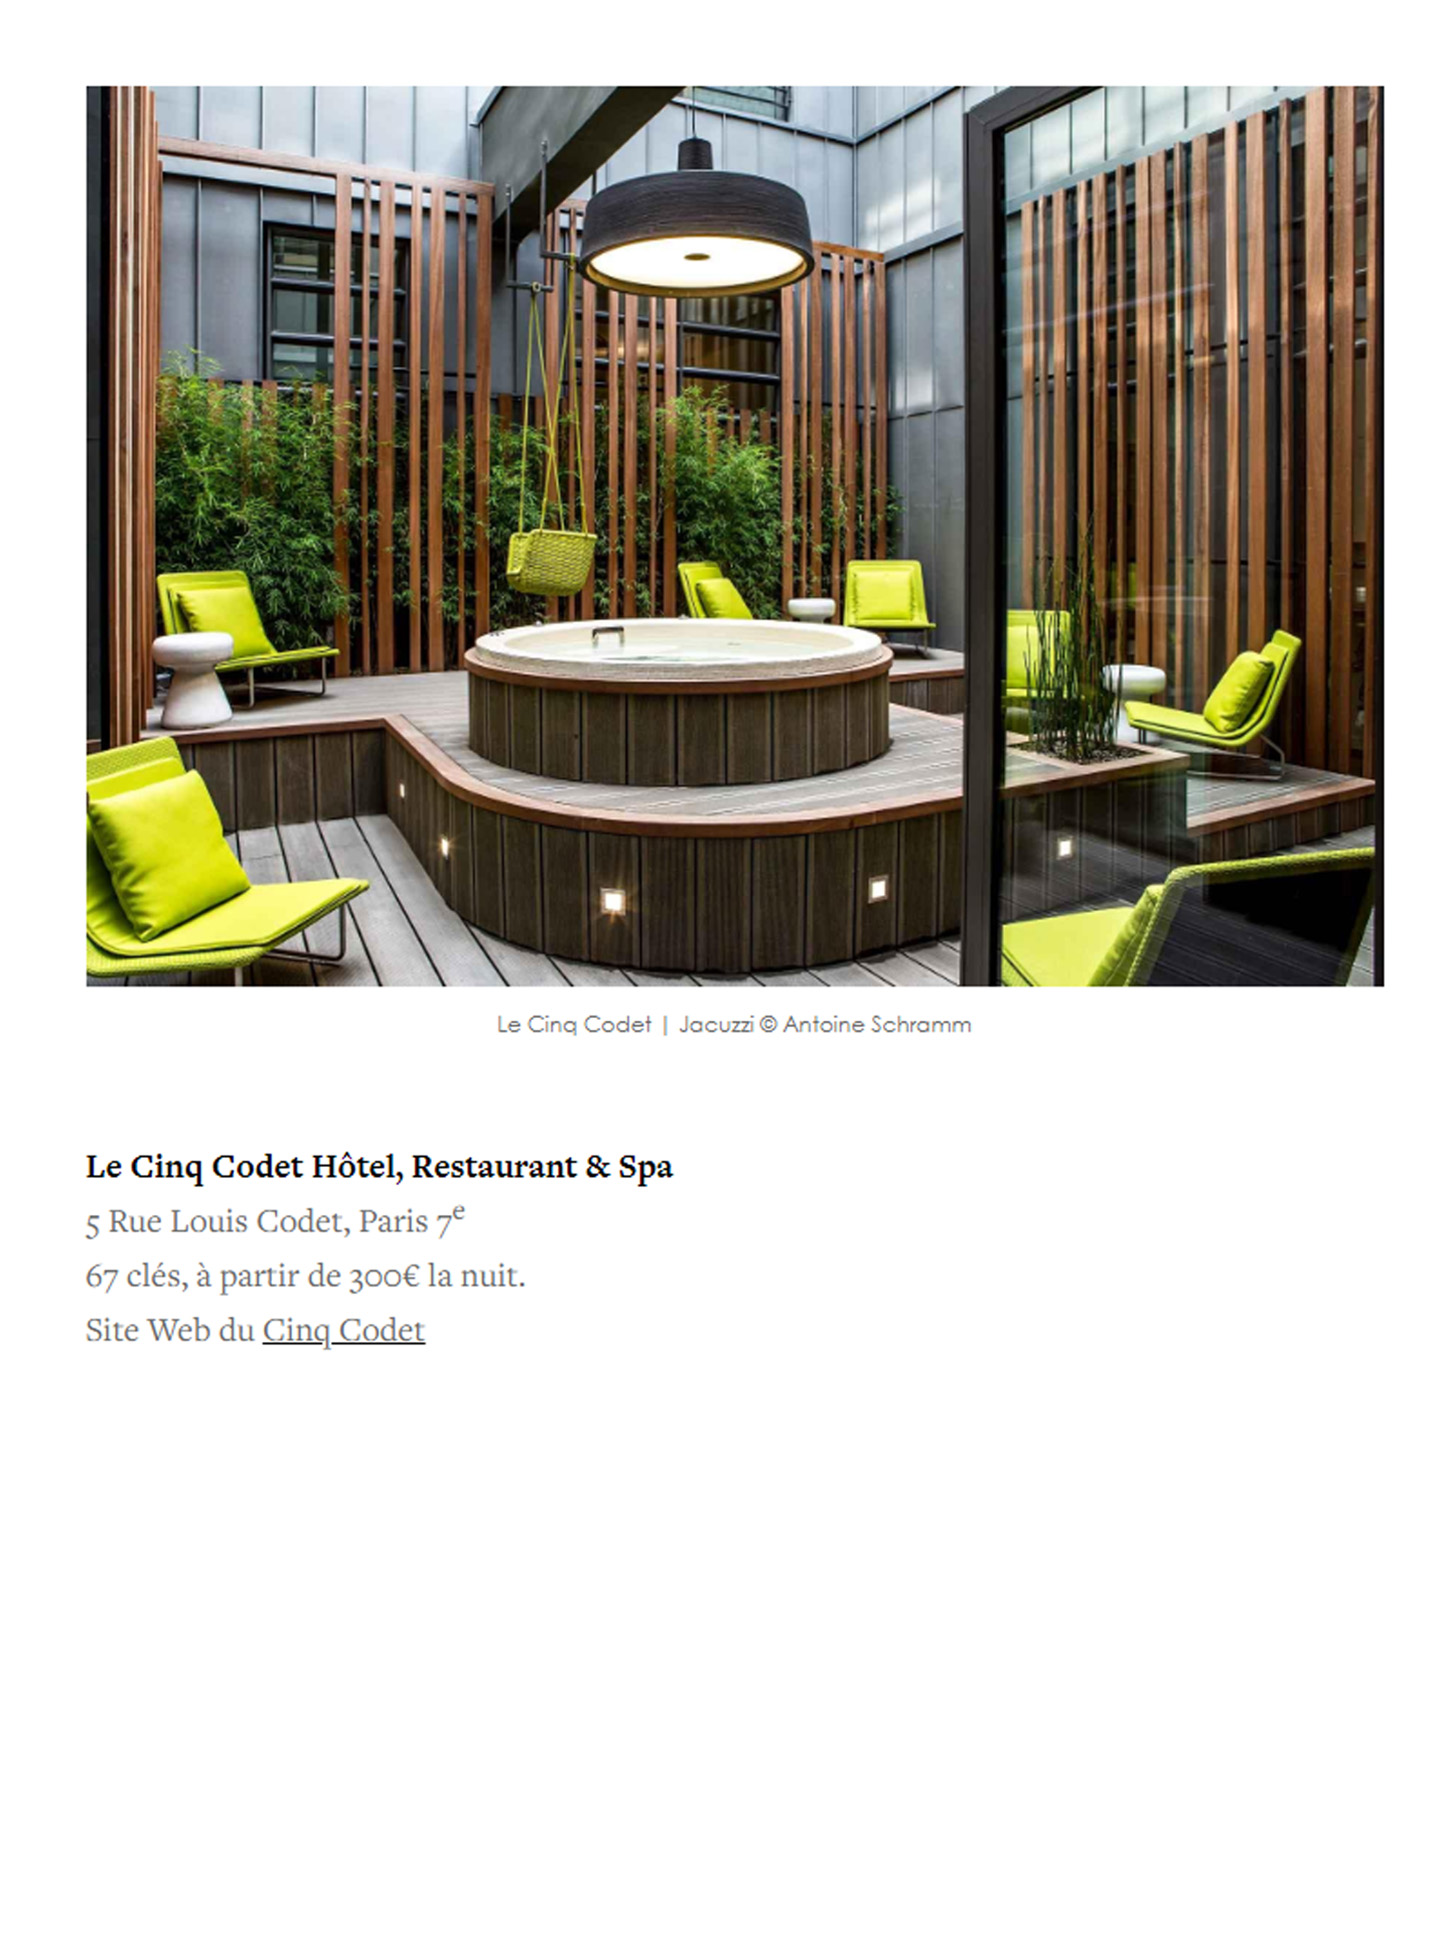 article sur l'hotel le cinq codet dans le magazine yonder, hotel de luxe décoré par le studio jean-philippe nuel, architecture d'intérieur, hotel parisien 5 étoiles